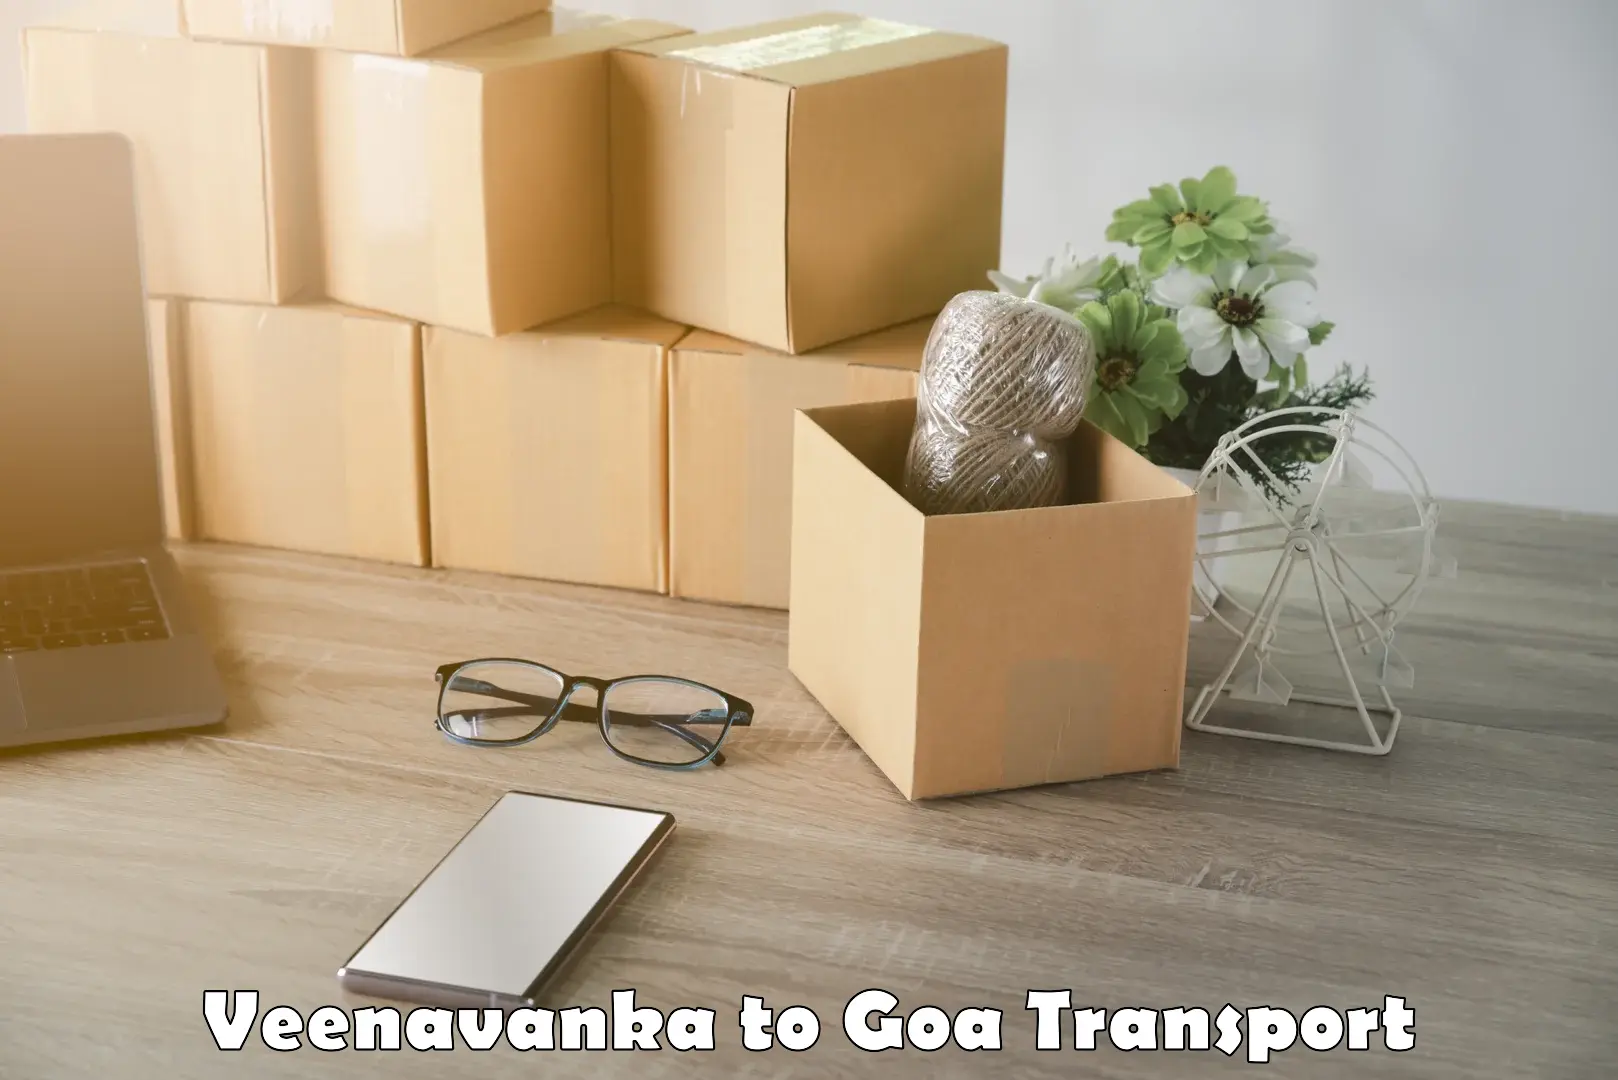 All India transport service Veenavanka to Vasco da Gama